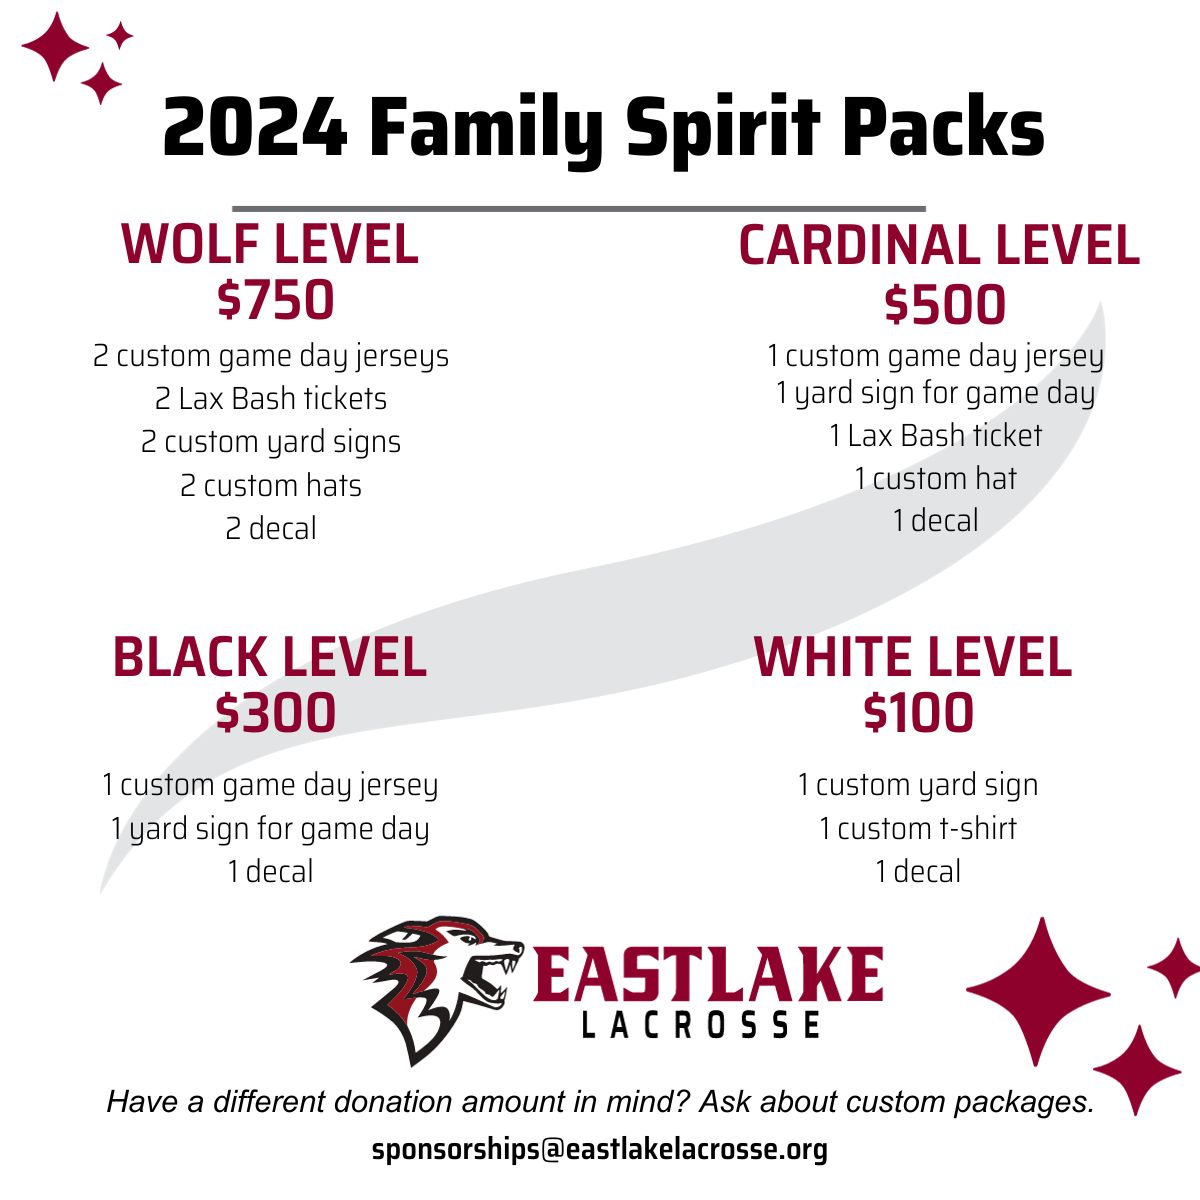 2024 Family Spirit Packs